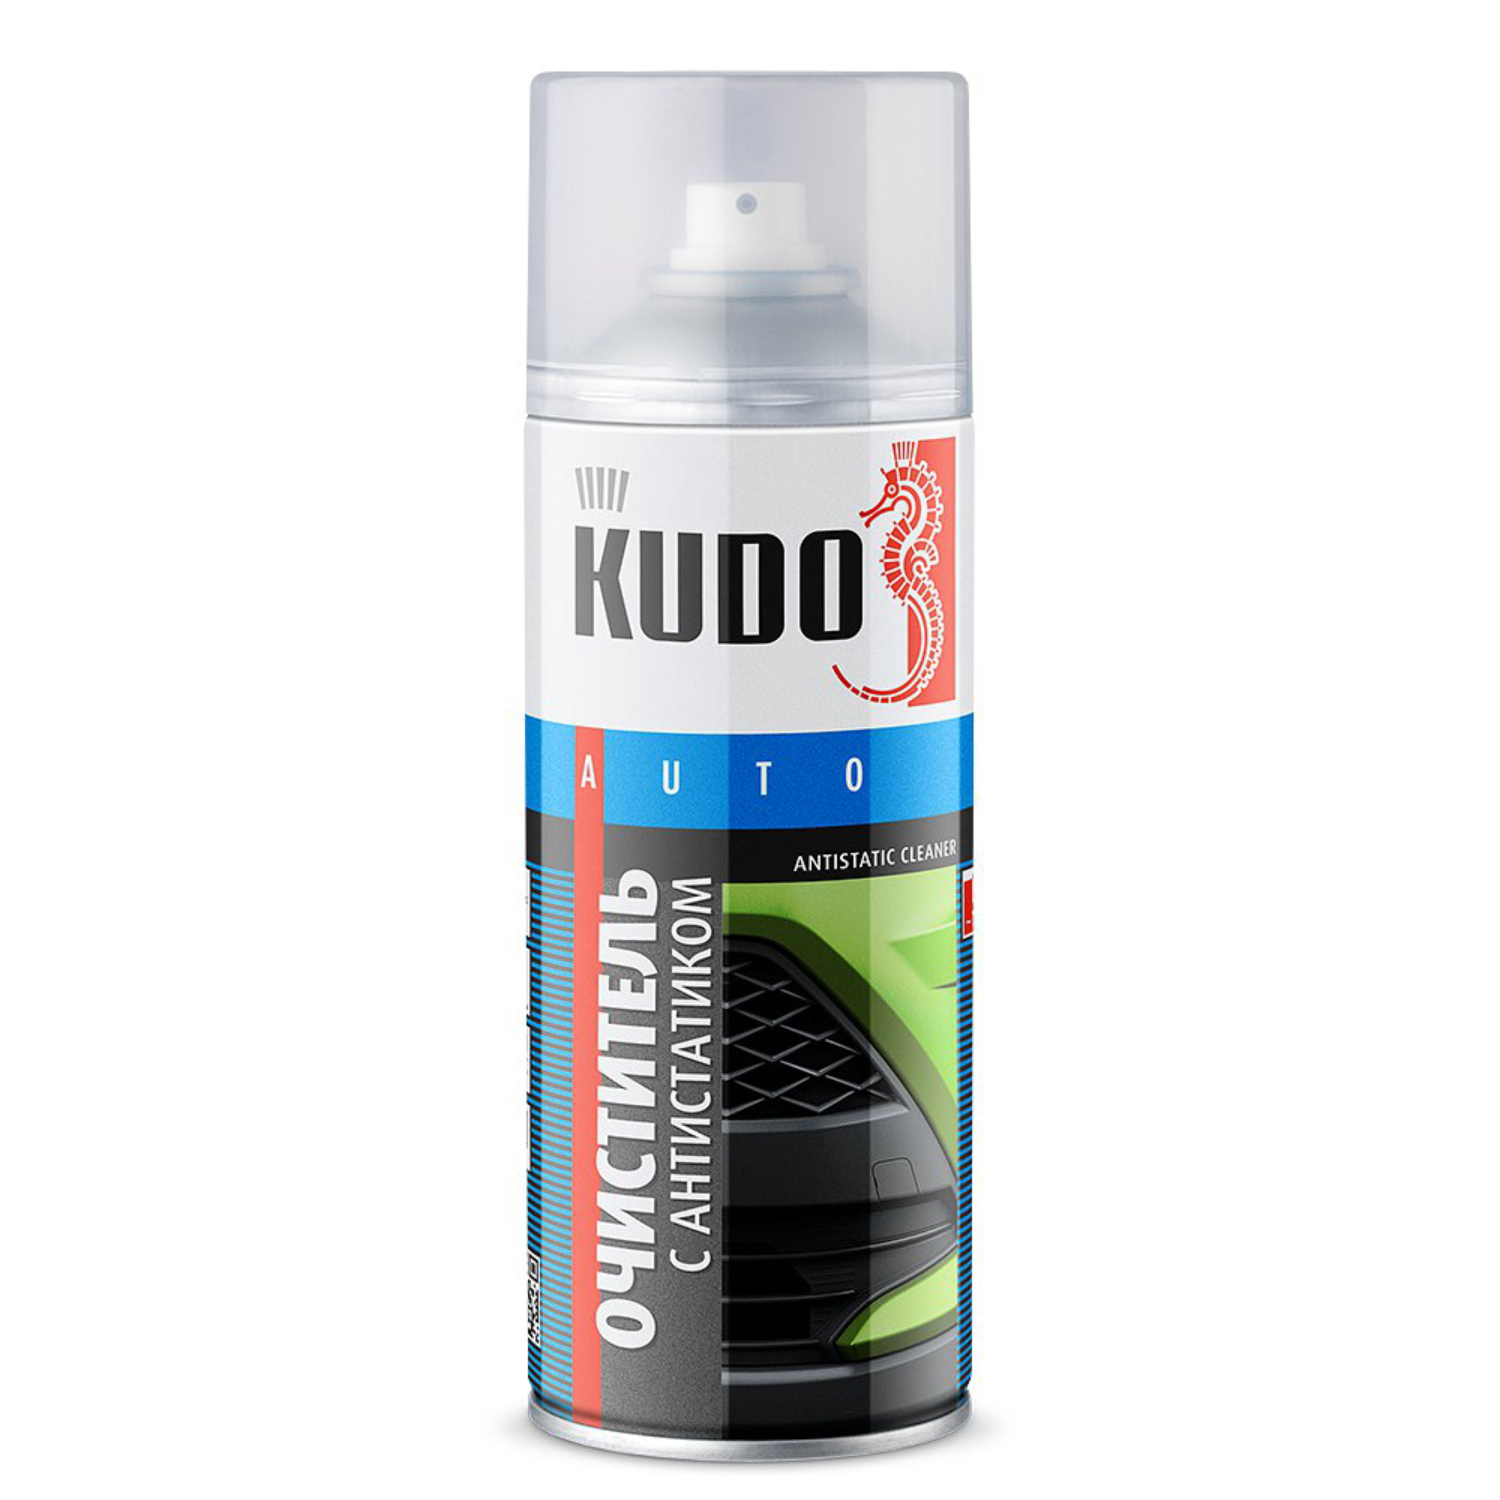 Очиститель кузова Kudo с антистатиком, универсальный, KU-9103, 520 мл